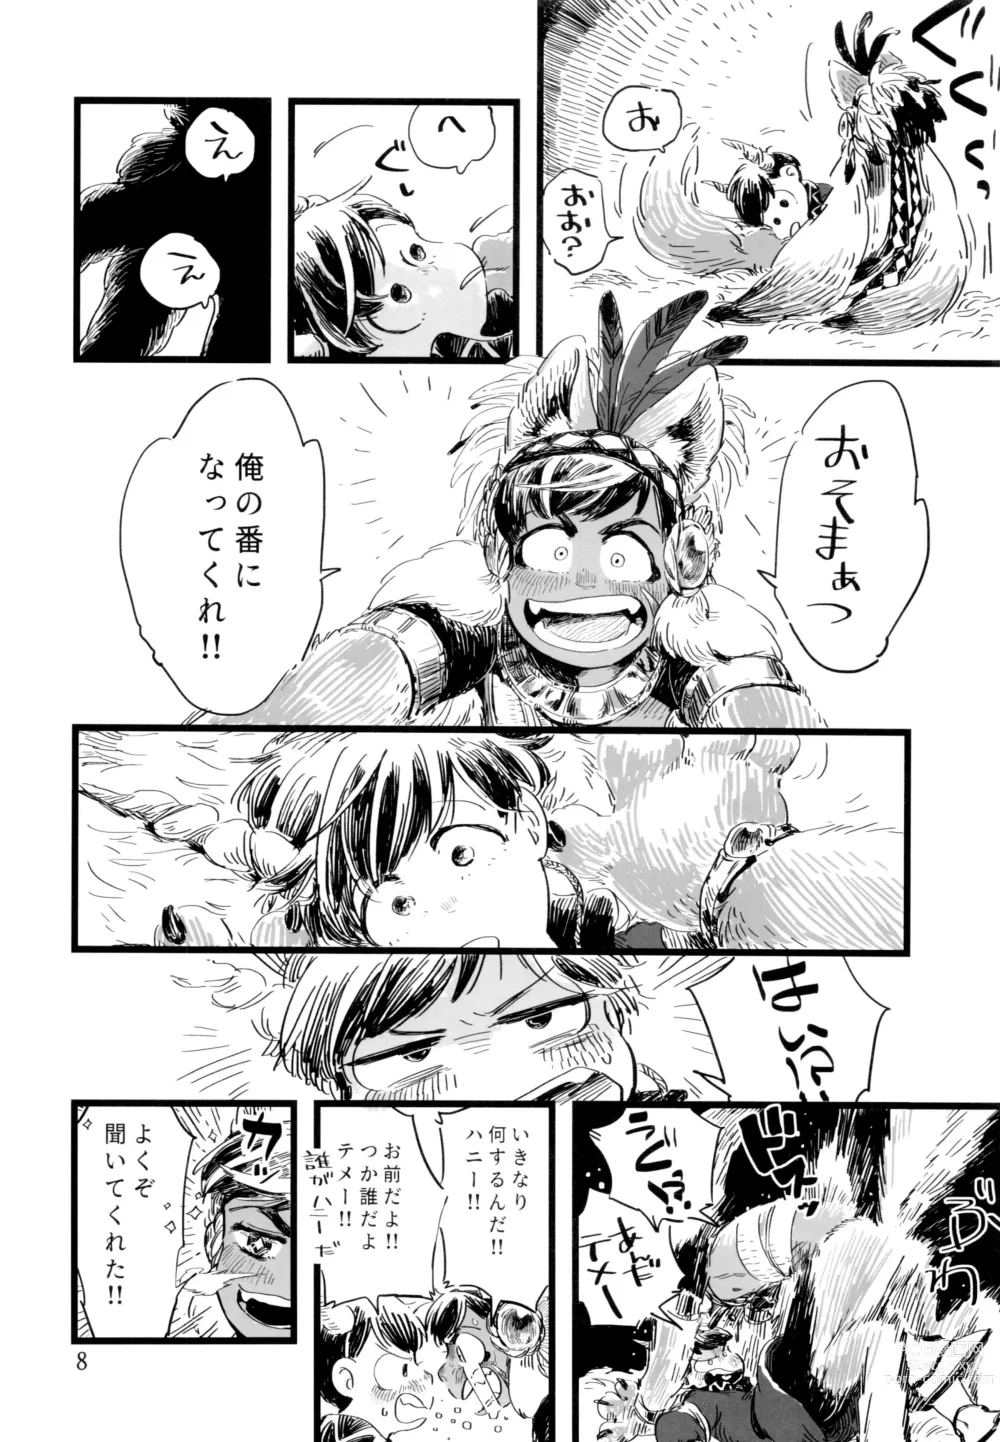 Page 8 of doujinshi Jinro and Tsuno Minzoku